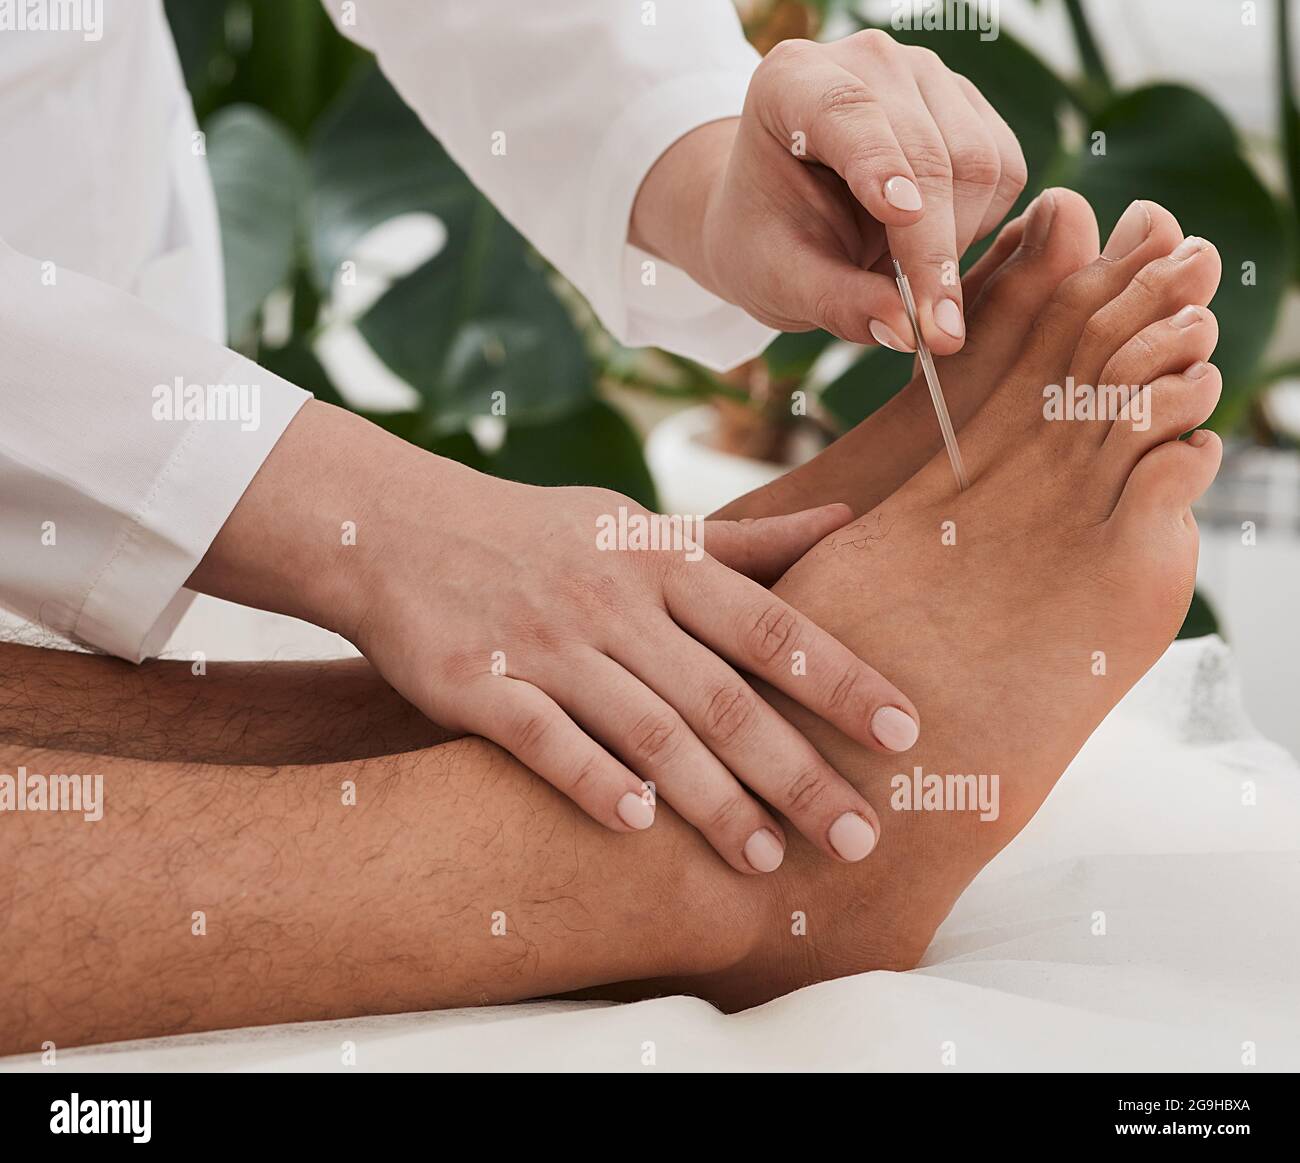 Trattamento dell'agopuntura per il dolore cronico del piede. Chiropractor che fa la terapia di agopuntura per i piedi del paziente con gli aghi. Riflessologia Foto Stock